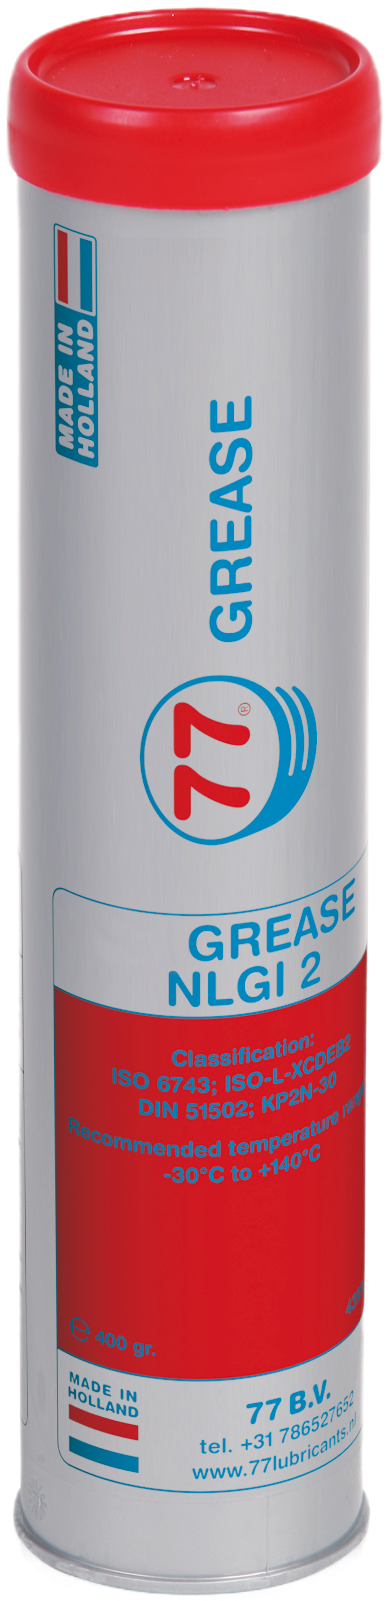 4402-0.4 EPX Grease NLGI 2 is een lithiumcomplex verdikt smeervet op basis van minerale olie en bevat antioxidanten, corrosieremmers en EP/AW-additieven.